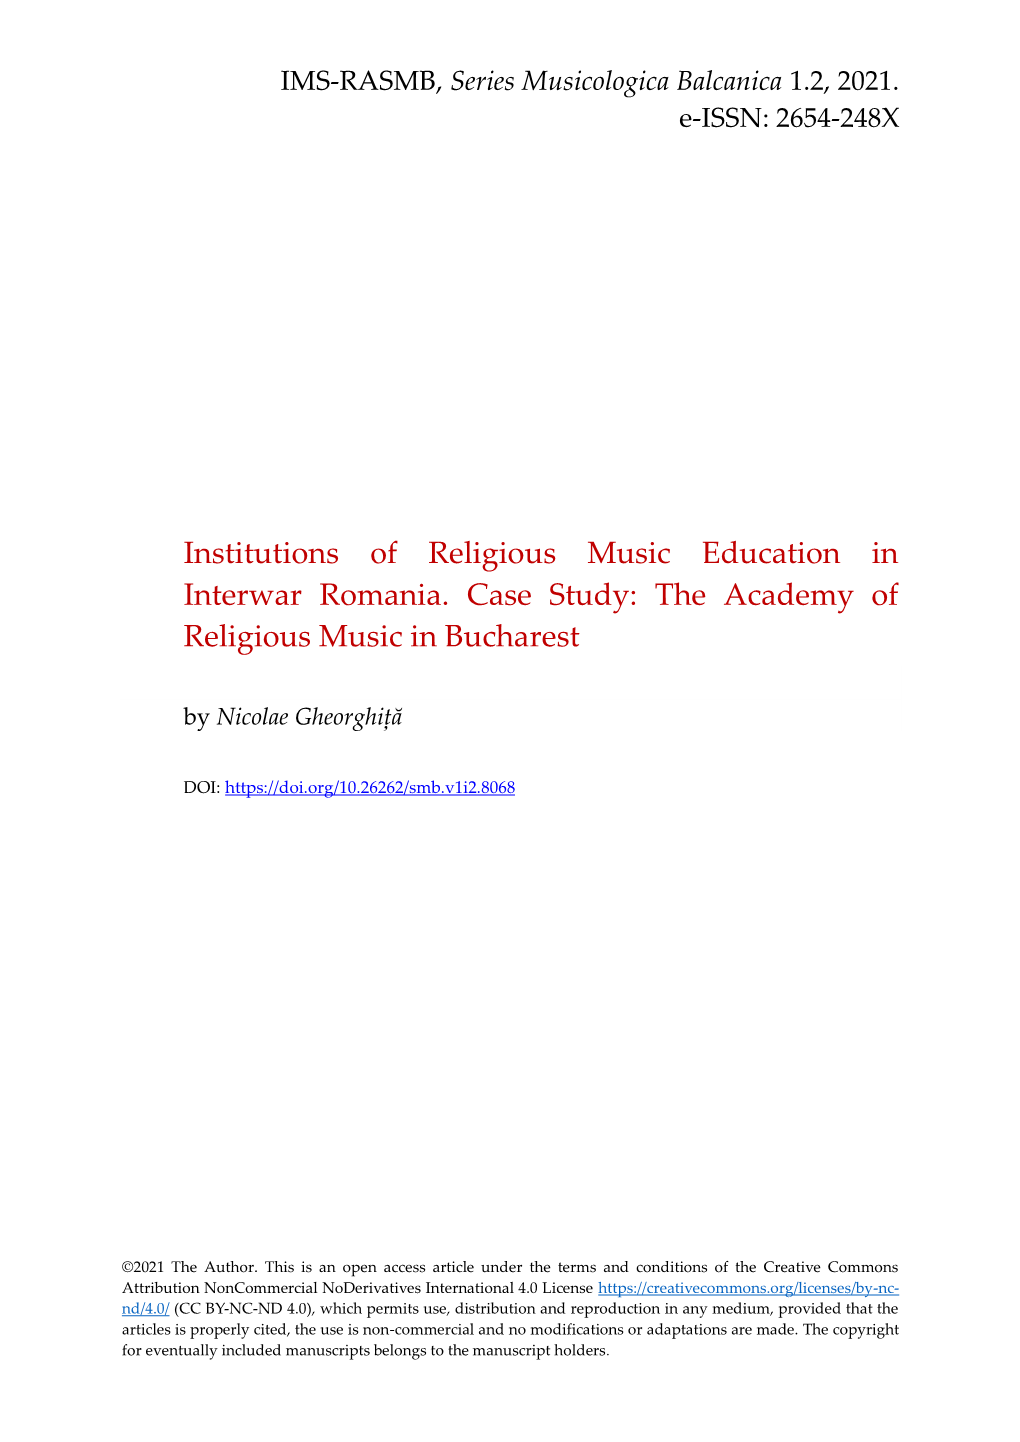 Institutions of Religious Music Education in Interwar Romania